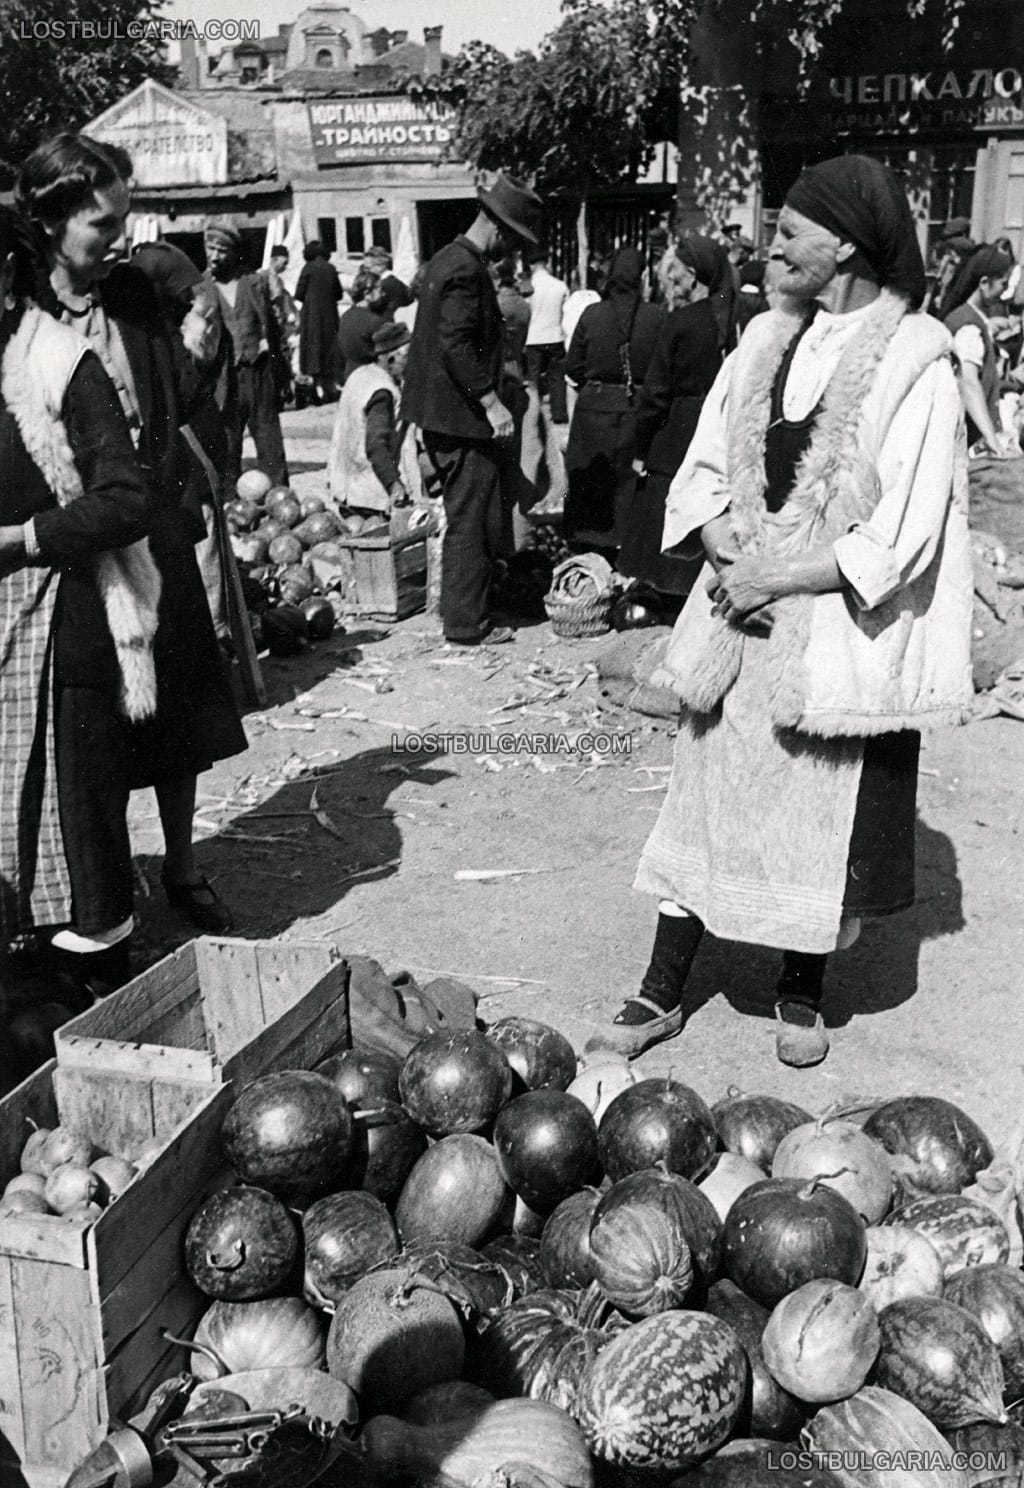 Възрастна жена с носия от Шопско - продавачка на дини, тикви, пъпеши и др., Женския пазар в София, 30-те години на ХХ век